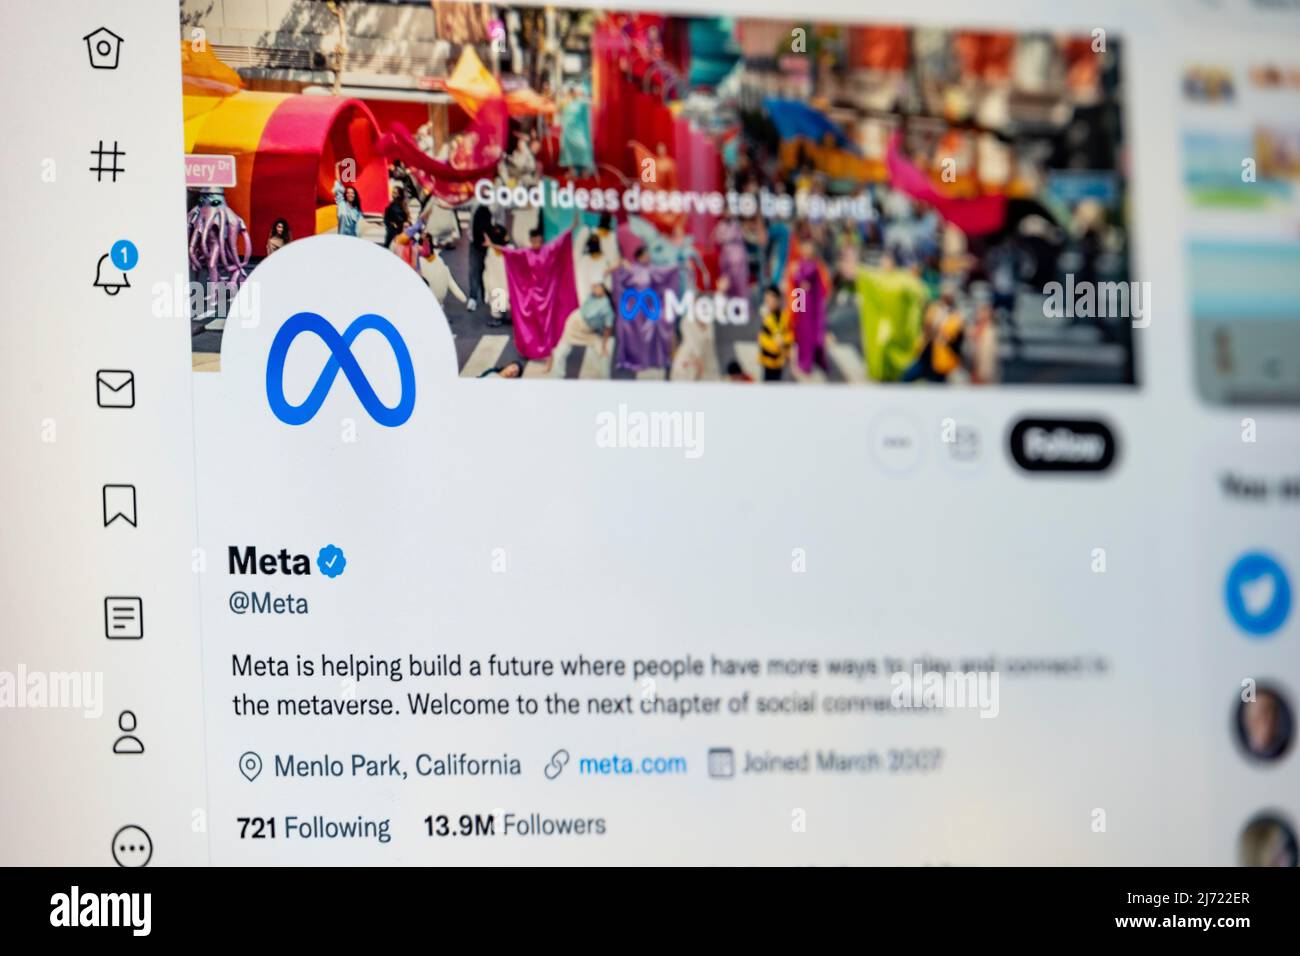 Twitter Seite des Unternehmens Meta, Twitter, Soziales Netzwerk, Internet, Internetseite, Bildschirmfoto, dettaglio, Germania Foto Stock